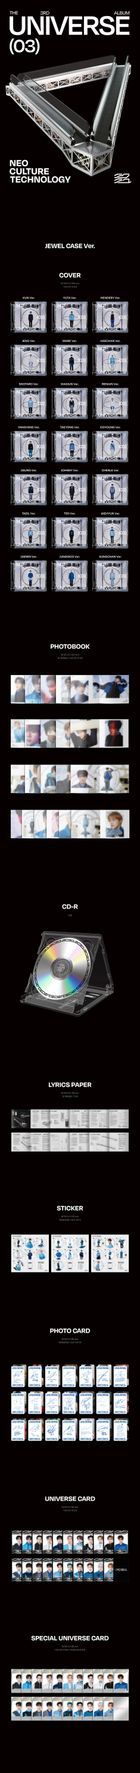 NCT Vol. 3 - Universe (Jewel Case Version) (Xiaojun Version)